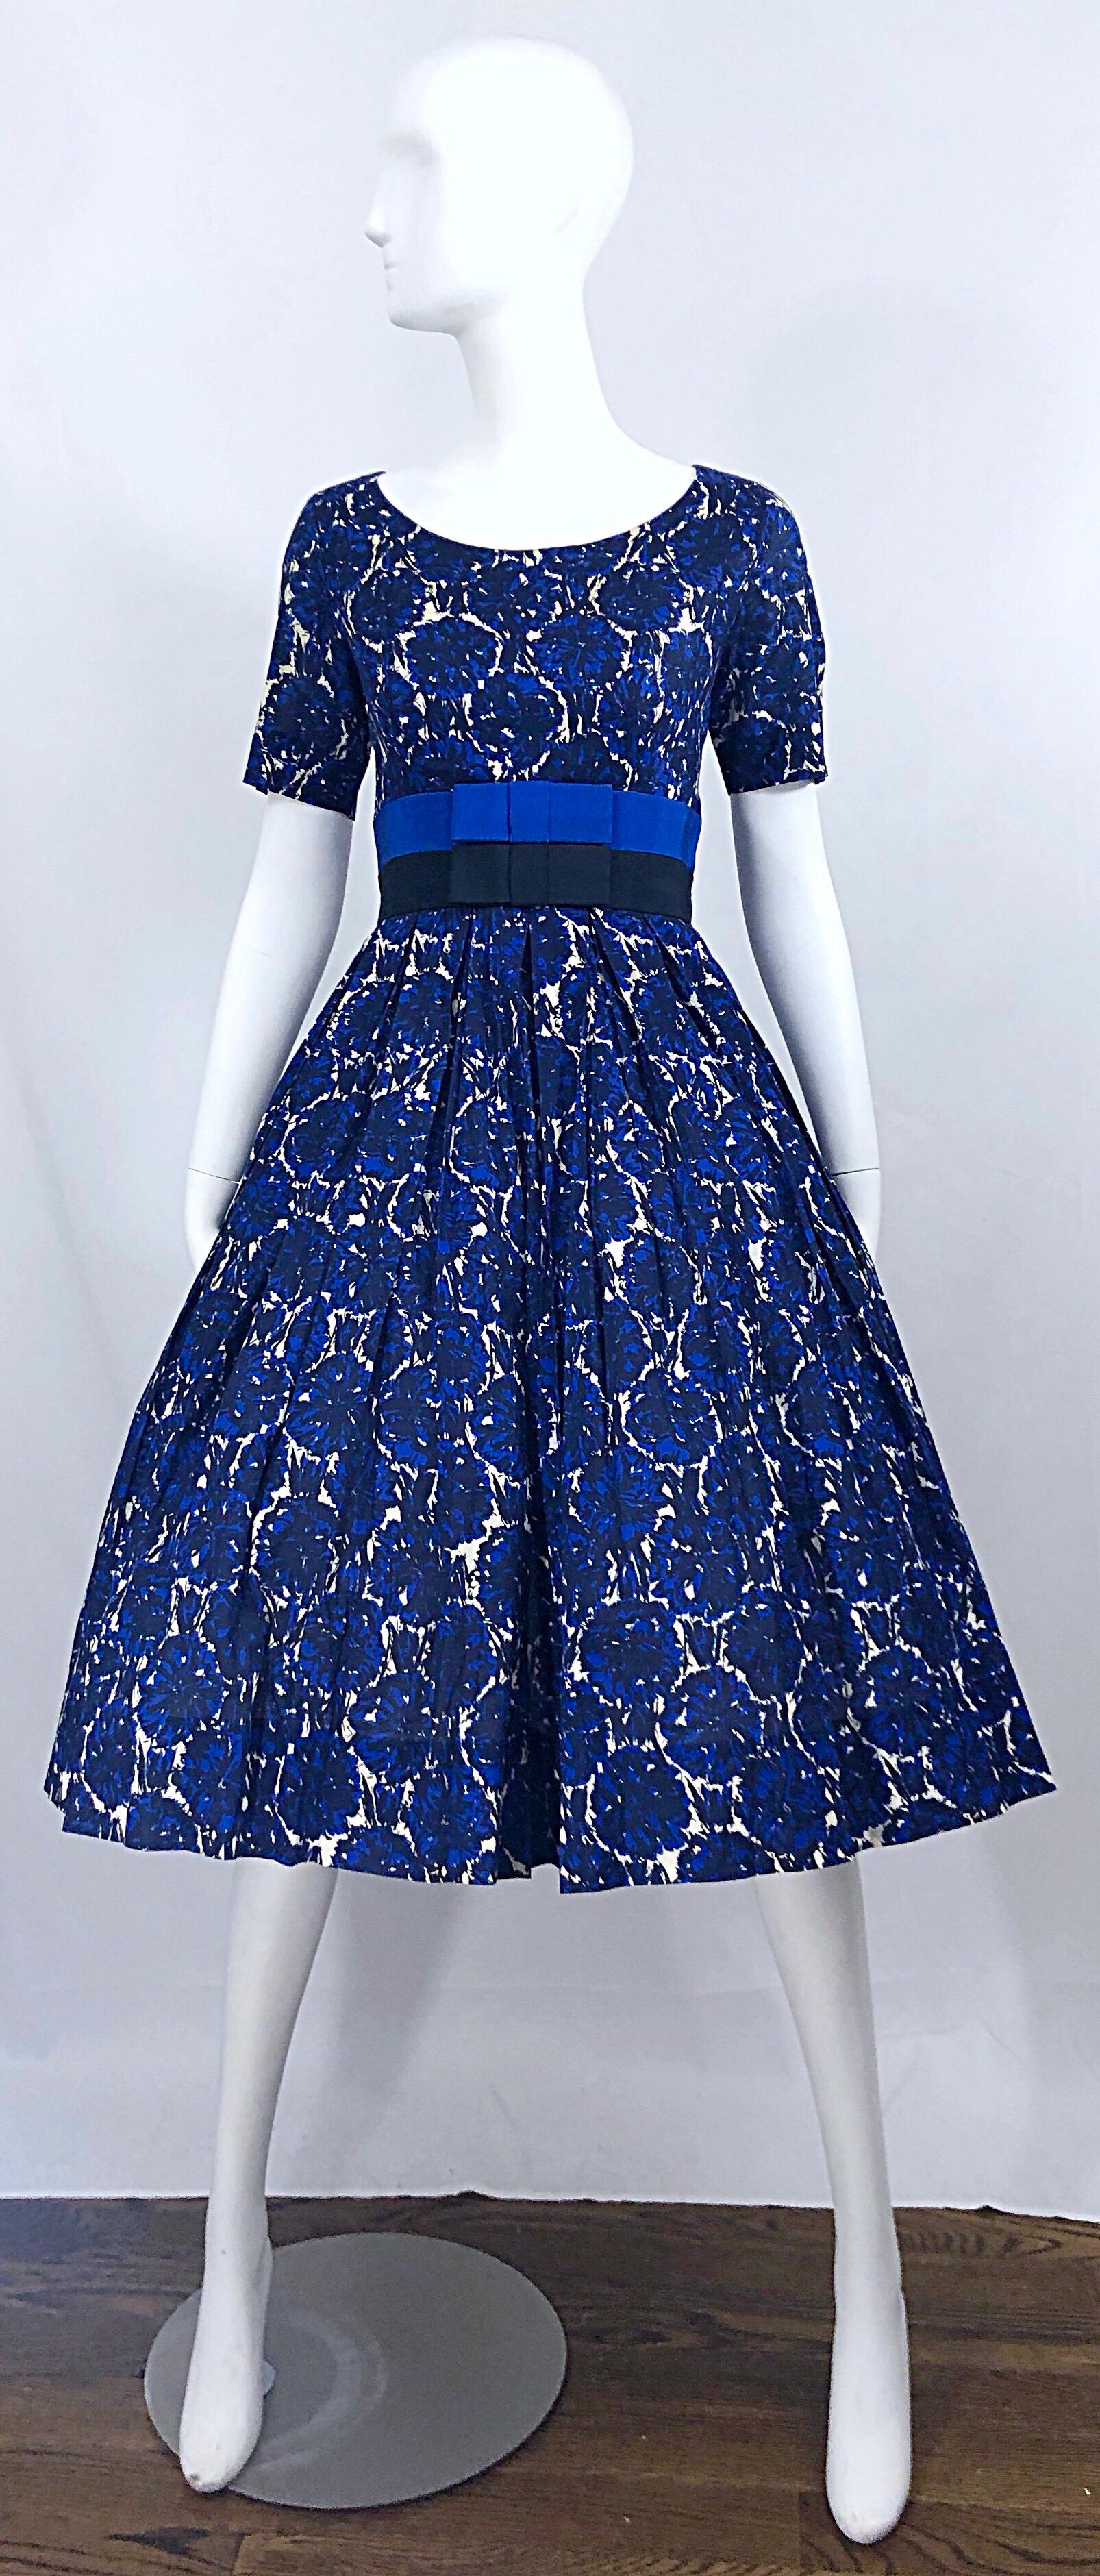 Phénoménale robe vintage des années 50 BONWIT TELLER demi couture en coton imprimé de fleurs abstraites ! Le corsage est ajusté, avec deux bandes de nœuds en gros-grain de soie de couleur bleue et noire. La jupe complète a beaucoup d'espace pour